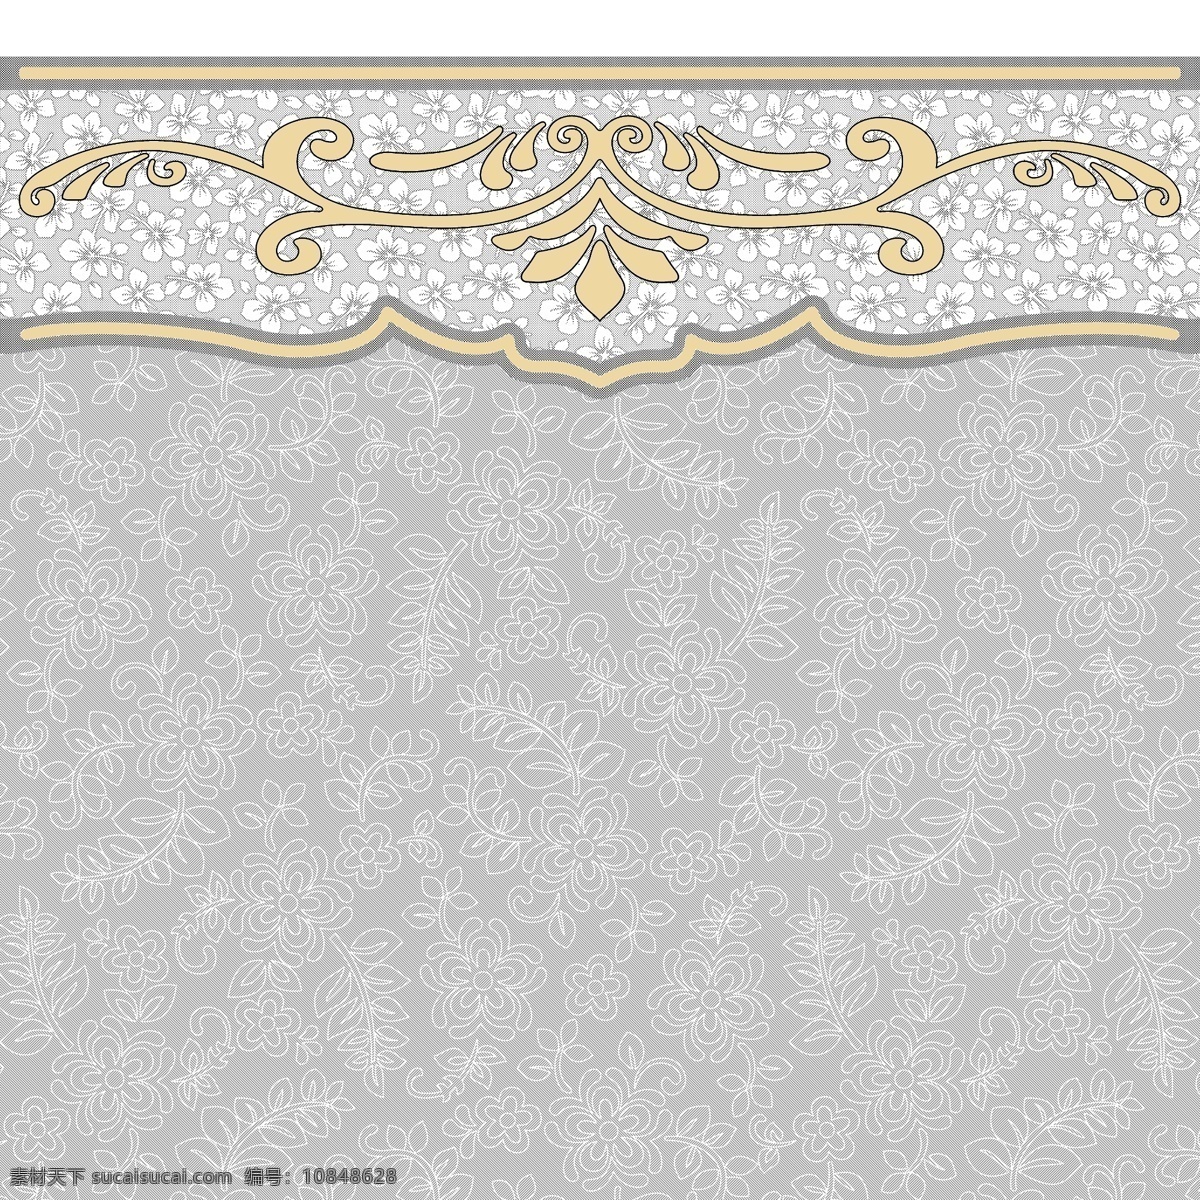 天花板设计 底纹 瓷砖 地毯设计 花纹 移门设计 分层